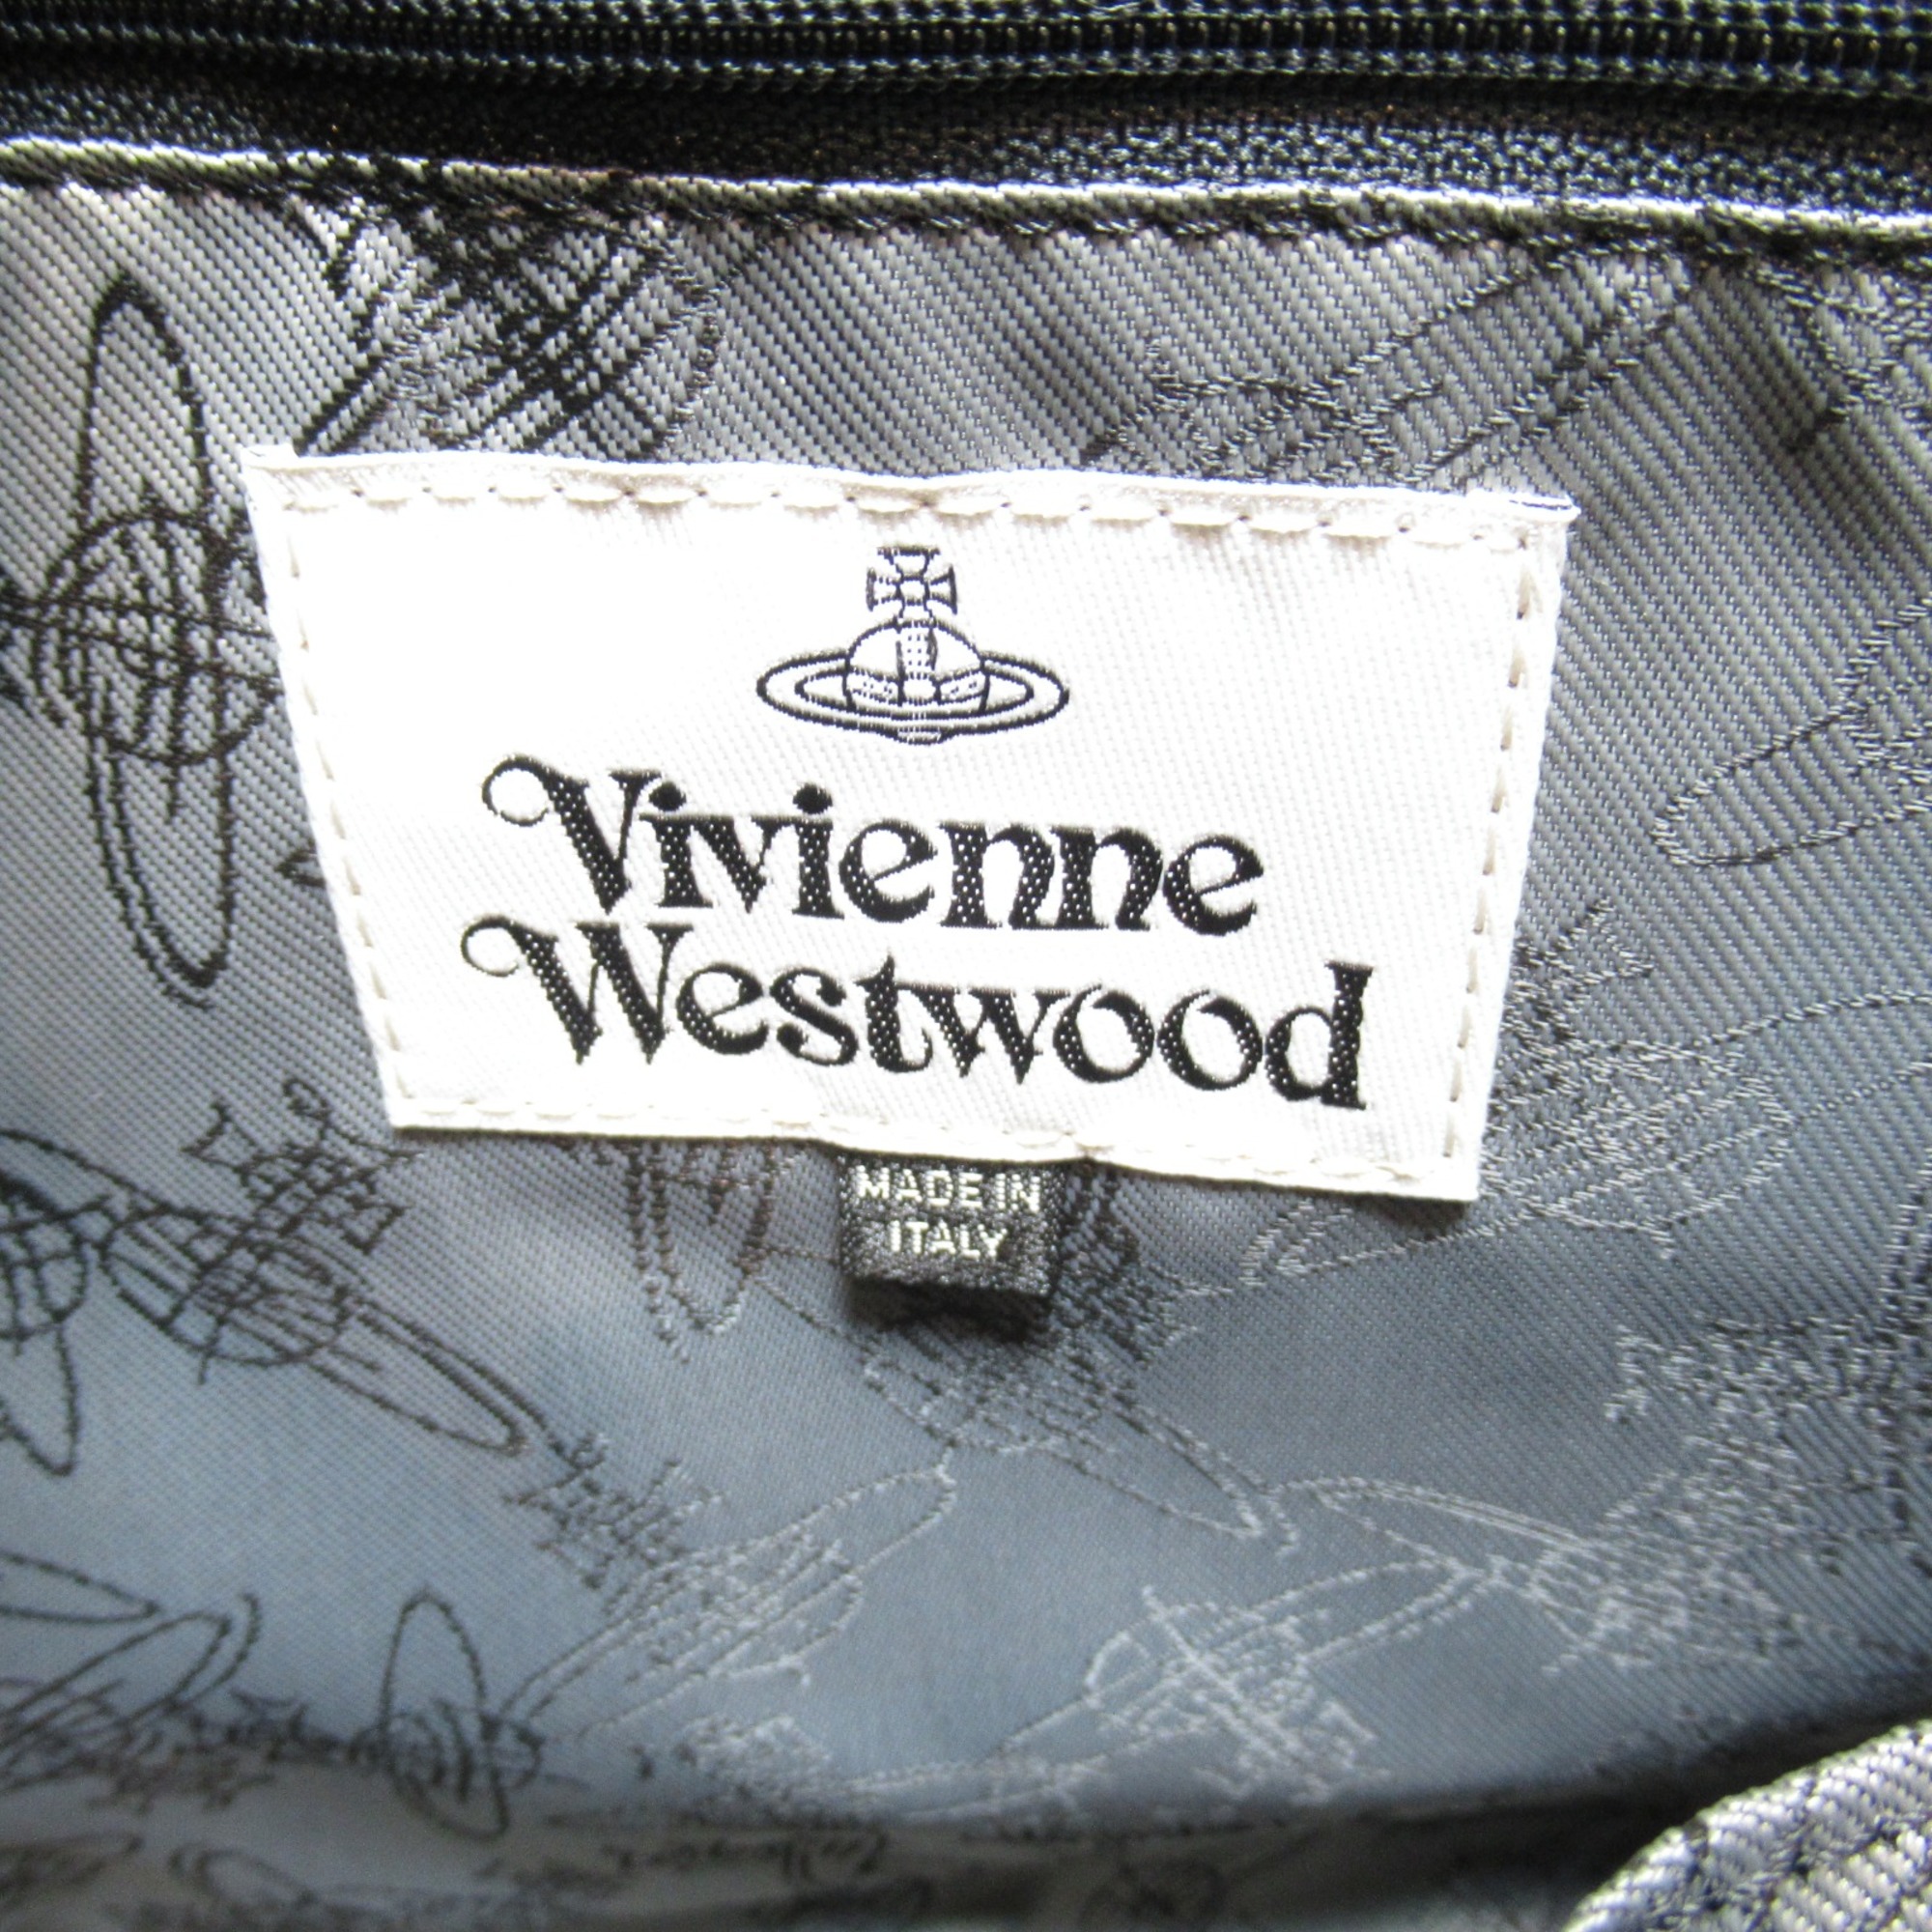 Vivienne Westwood Shopper Tote Bag Navy leather 4205004541214K401